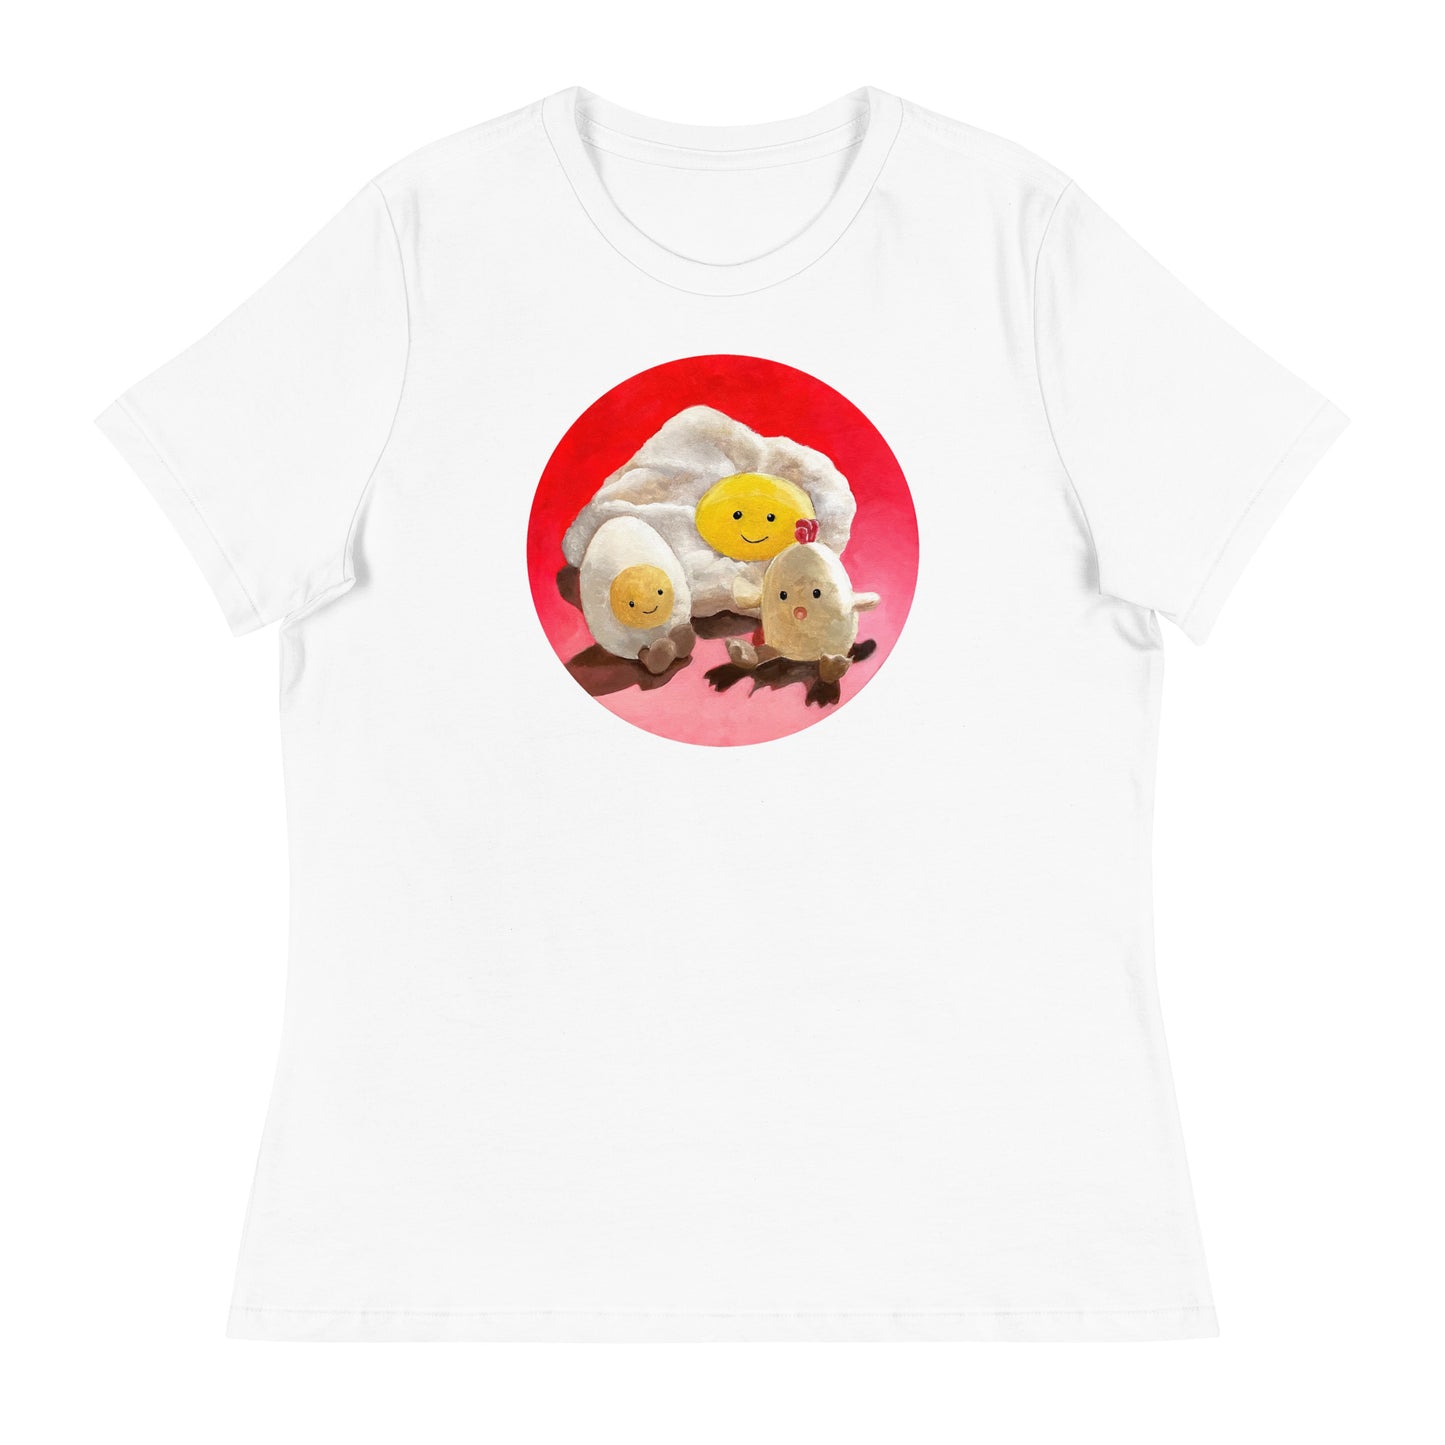 Eggs & Friends Women's T-Shirt